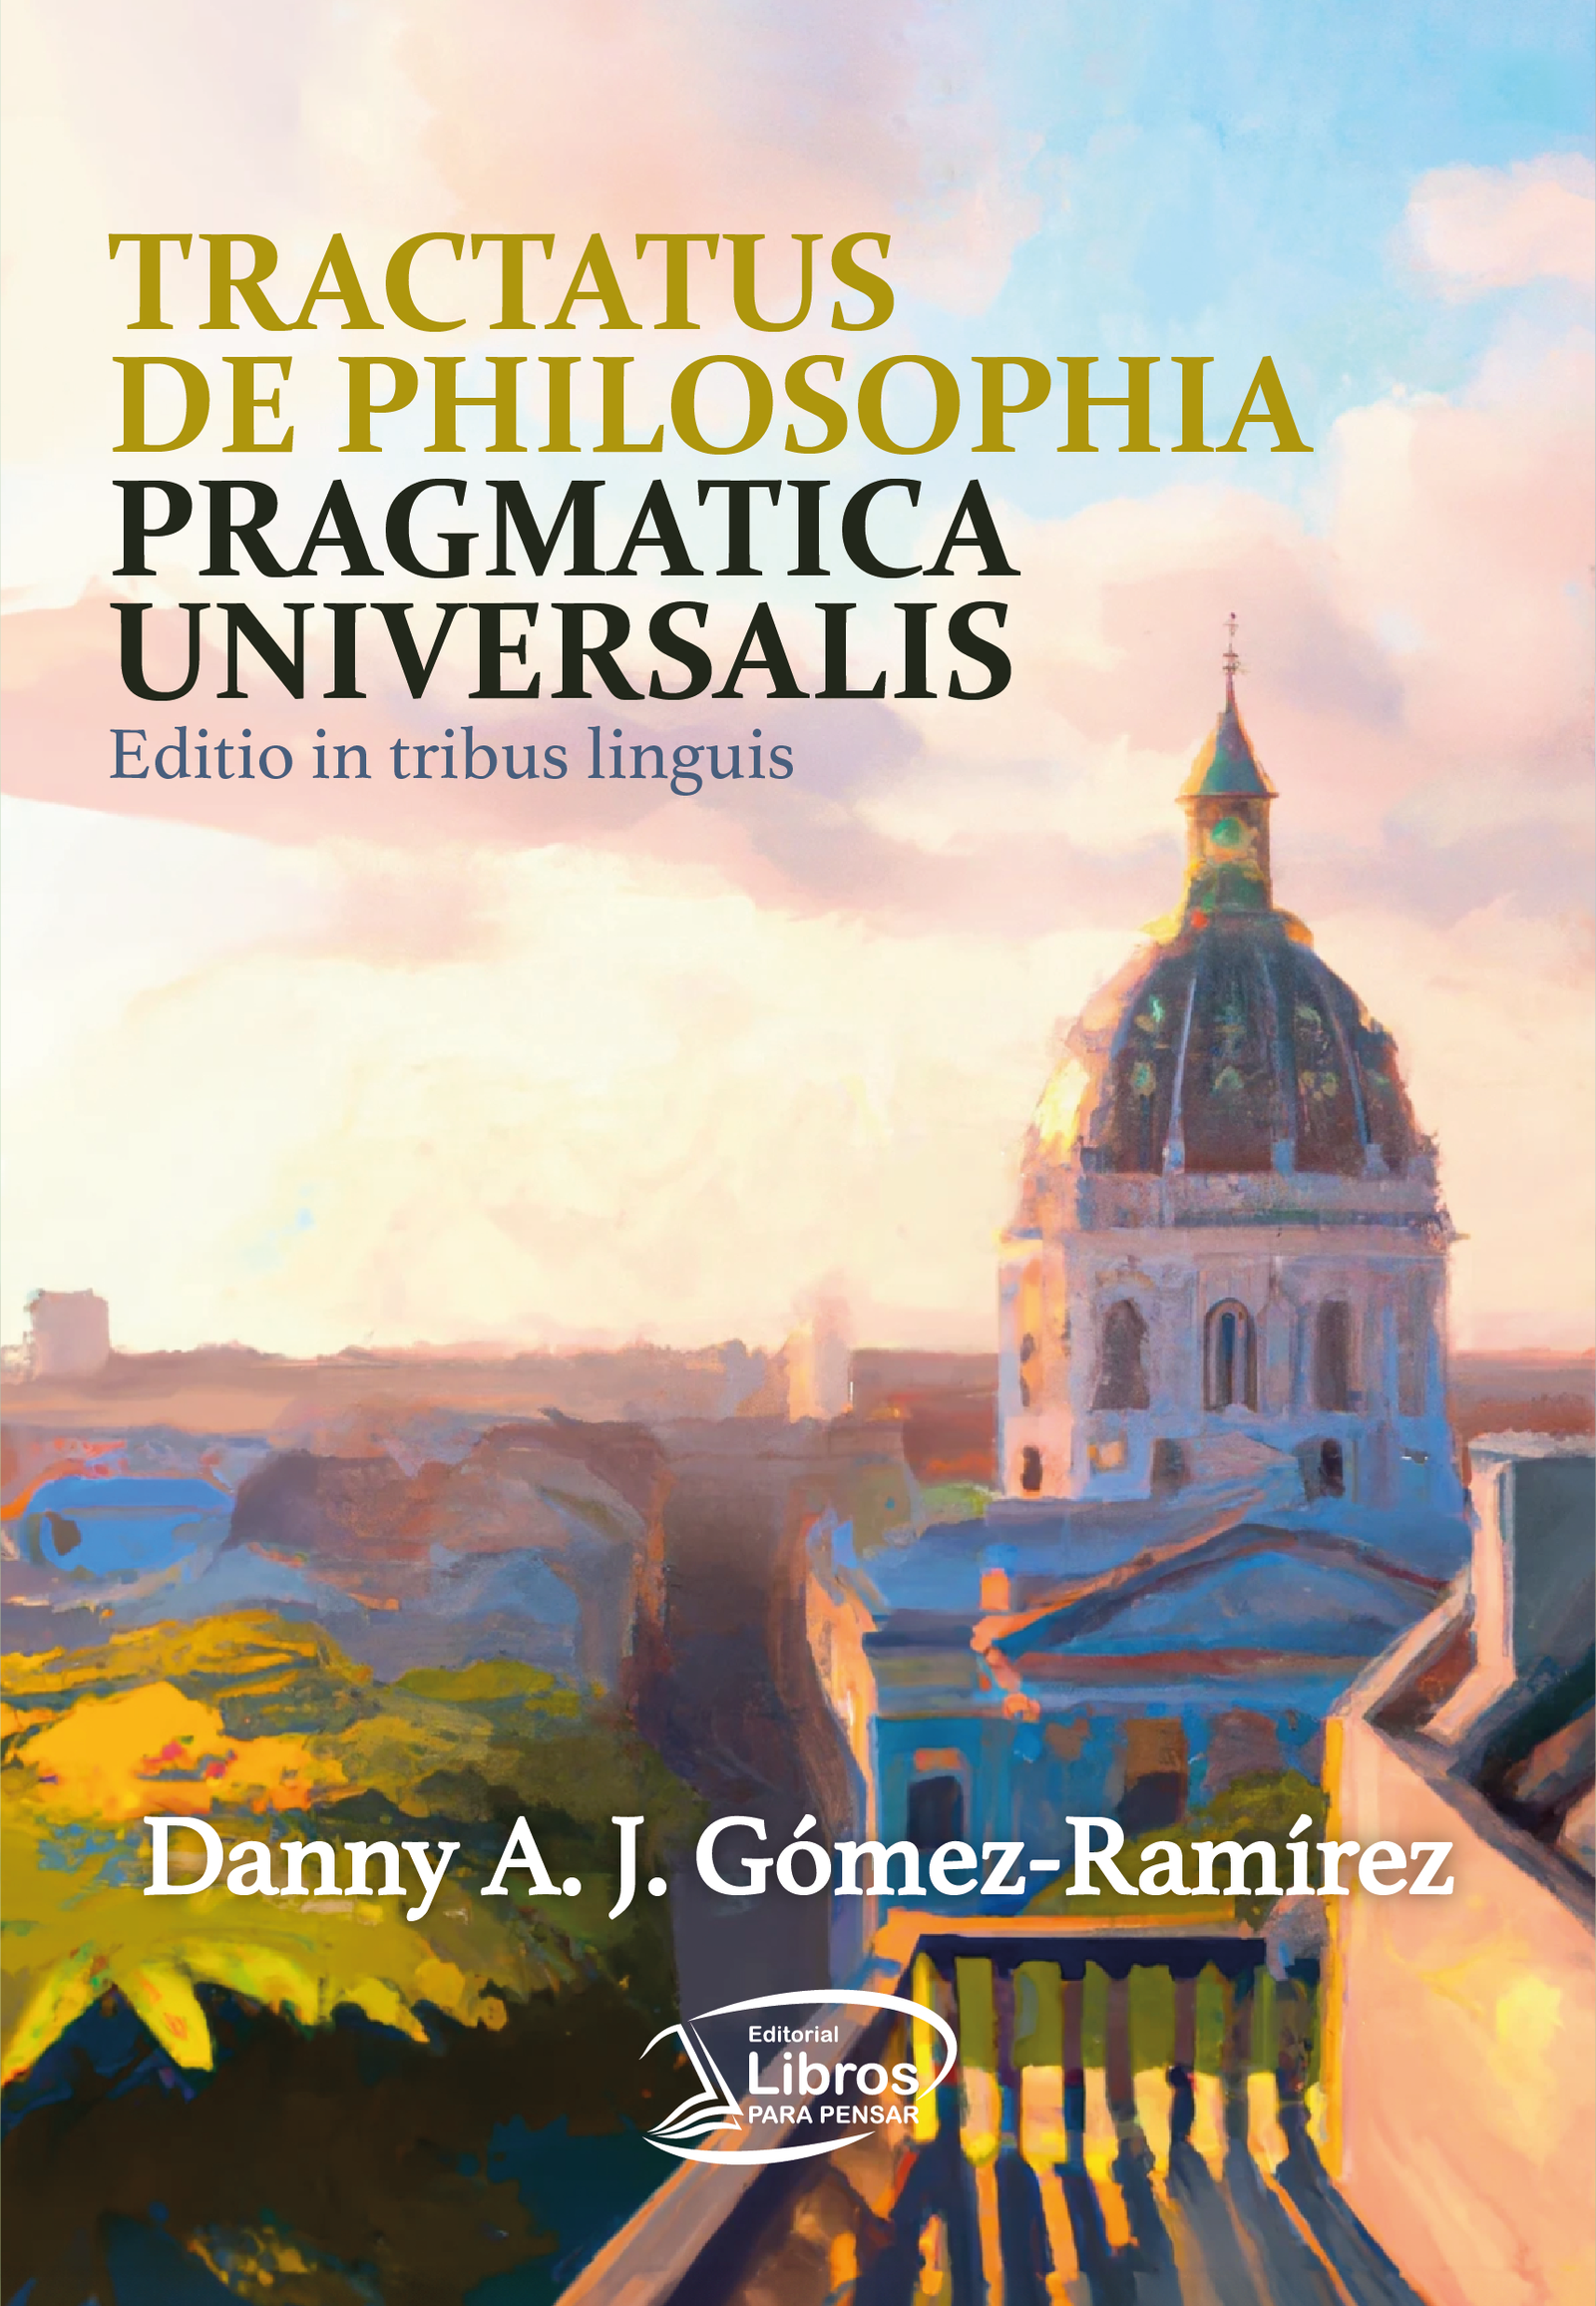 Tractatus de Philosophia Pragmatica Universalis